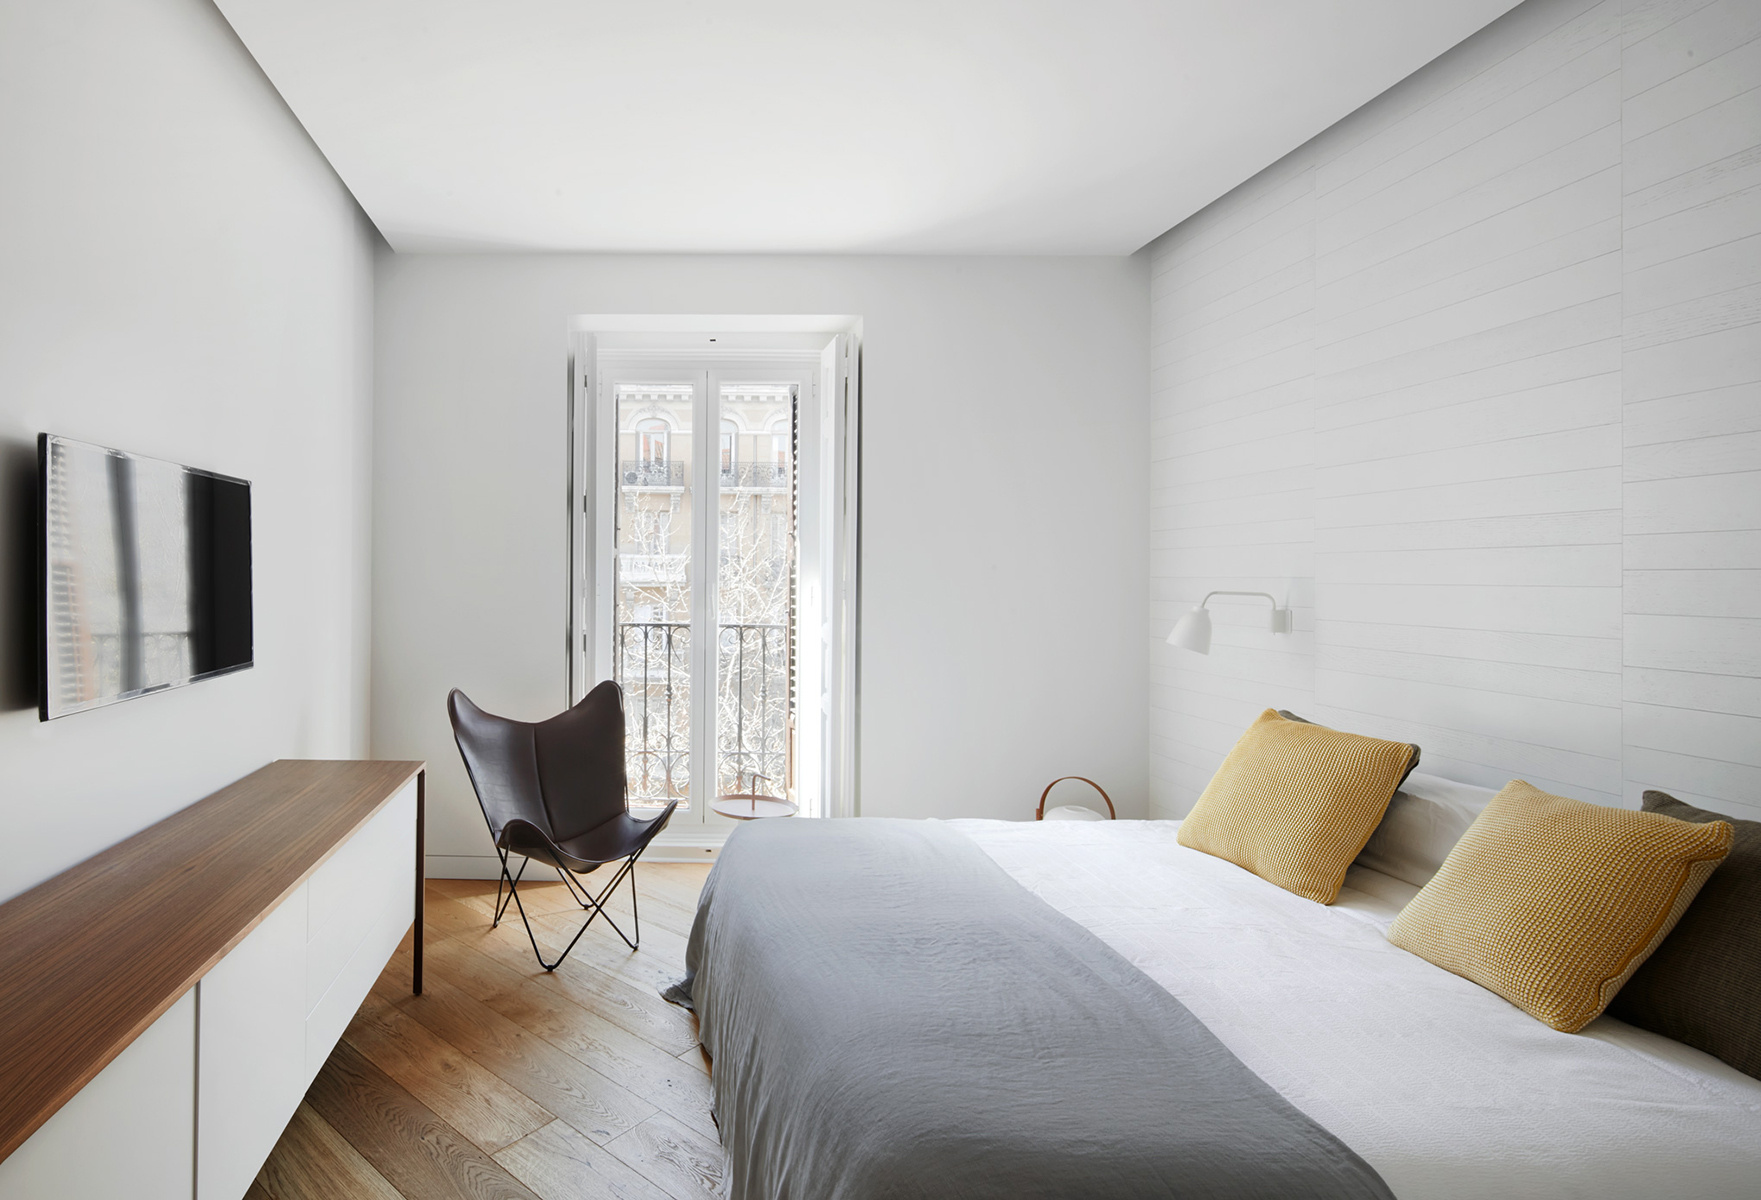 卧室在灰色、白色、木色和浅黄色的对比下，突显了业主对品质生活的追求。